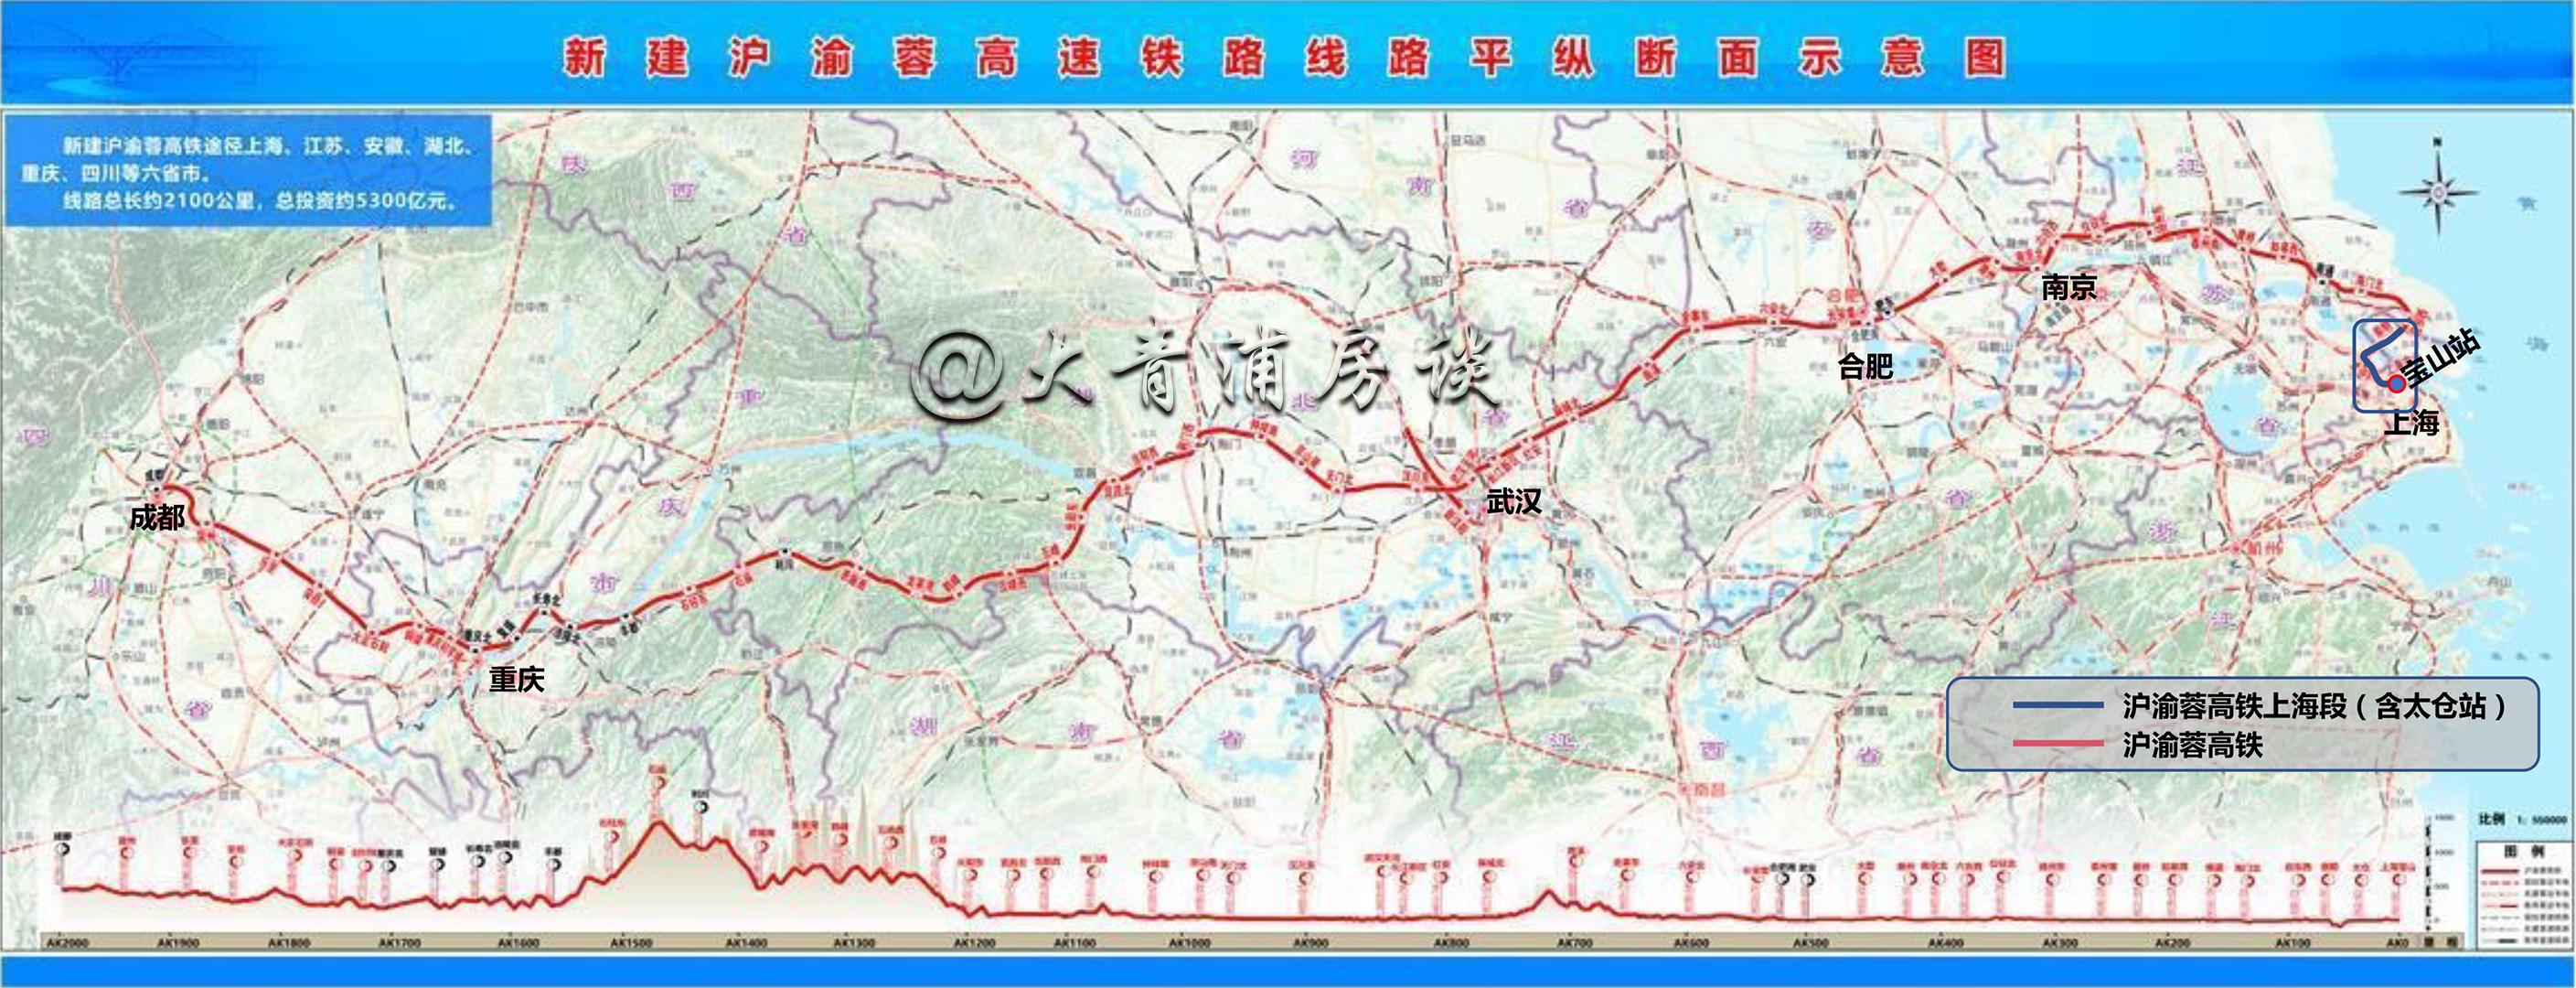 沪渝蓉高铁施工有序推进 - 湖北省人民政府门户网站